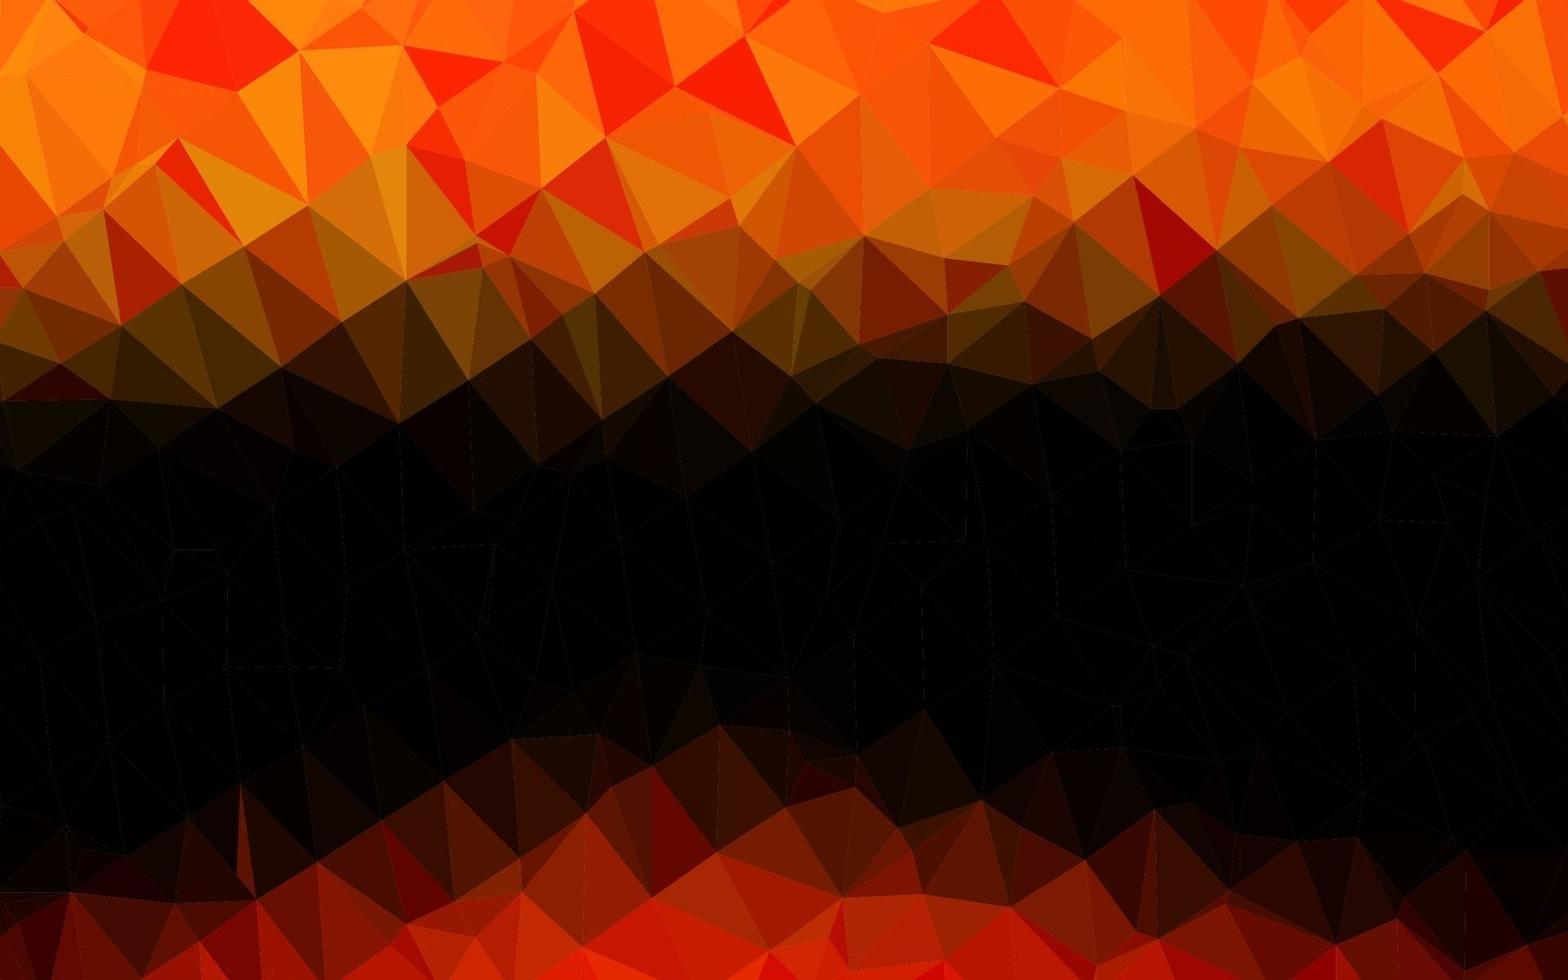 licht oranje vector abstracte veelhoekige textuur.